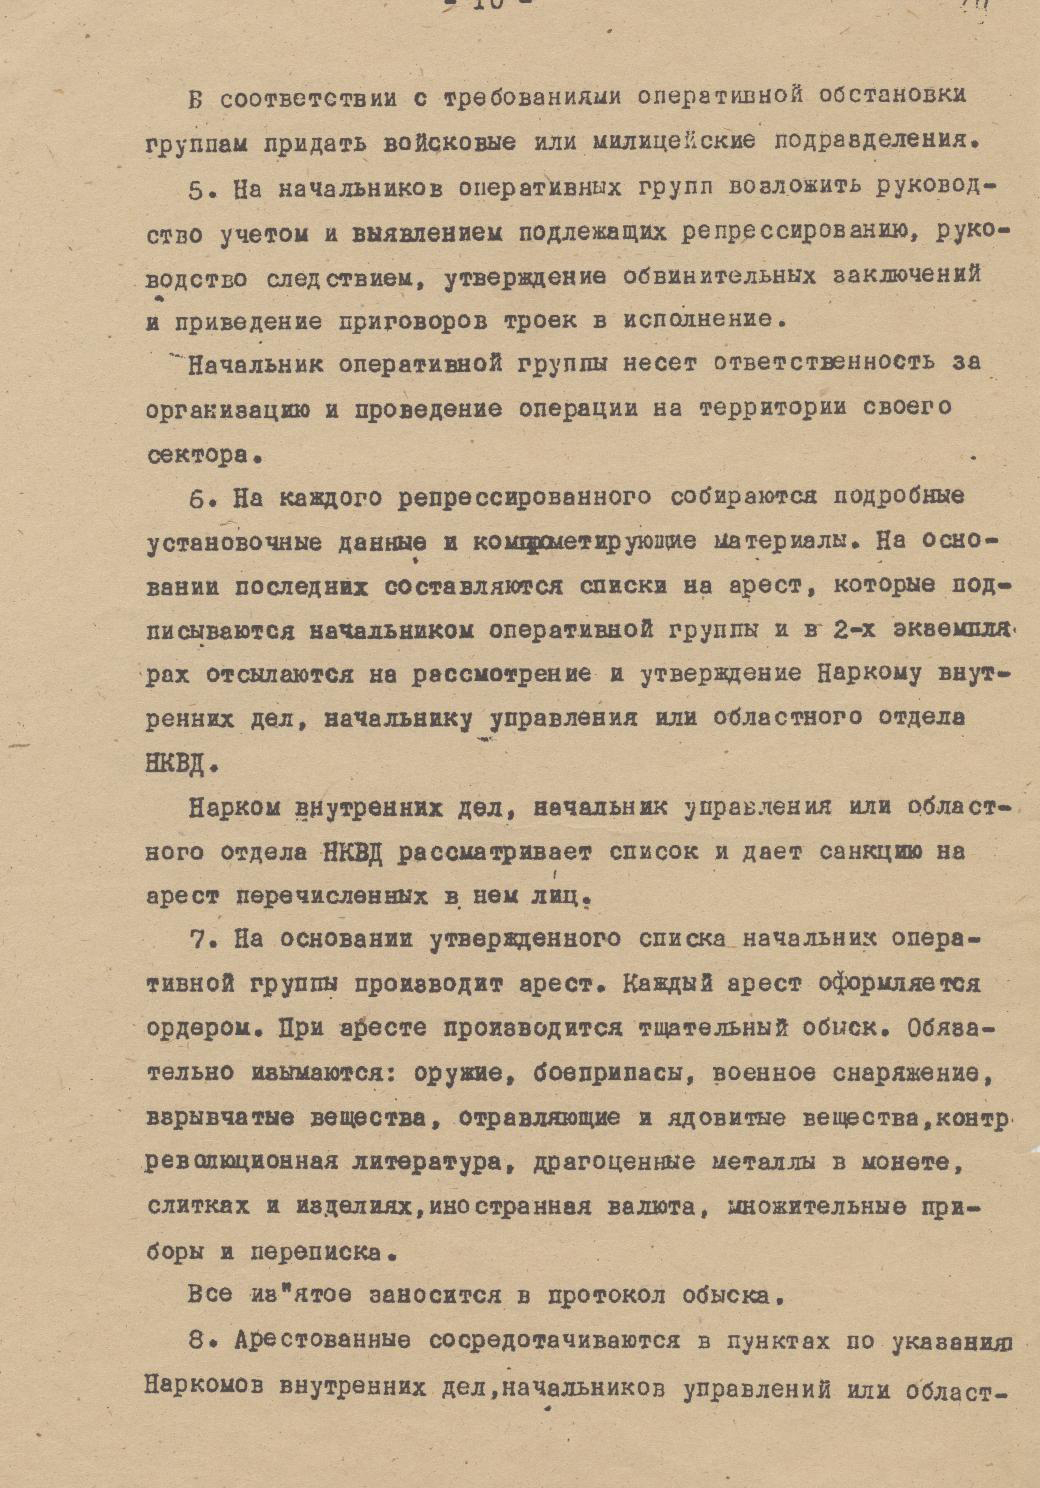 Приказ нквд 00447. Оперативный приказ 00447. Приказ 00447 НКВД СССР от 30 июля 1937 года. Приказ об операции по репрессированию.